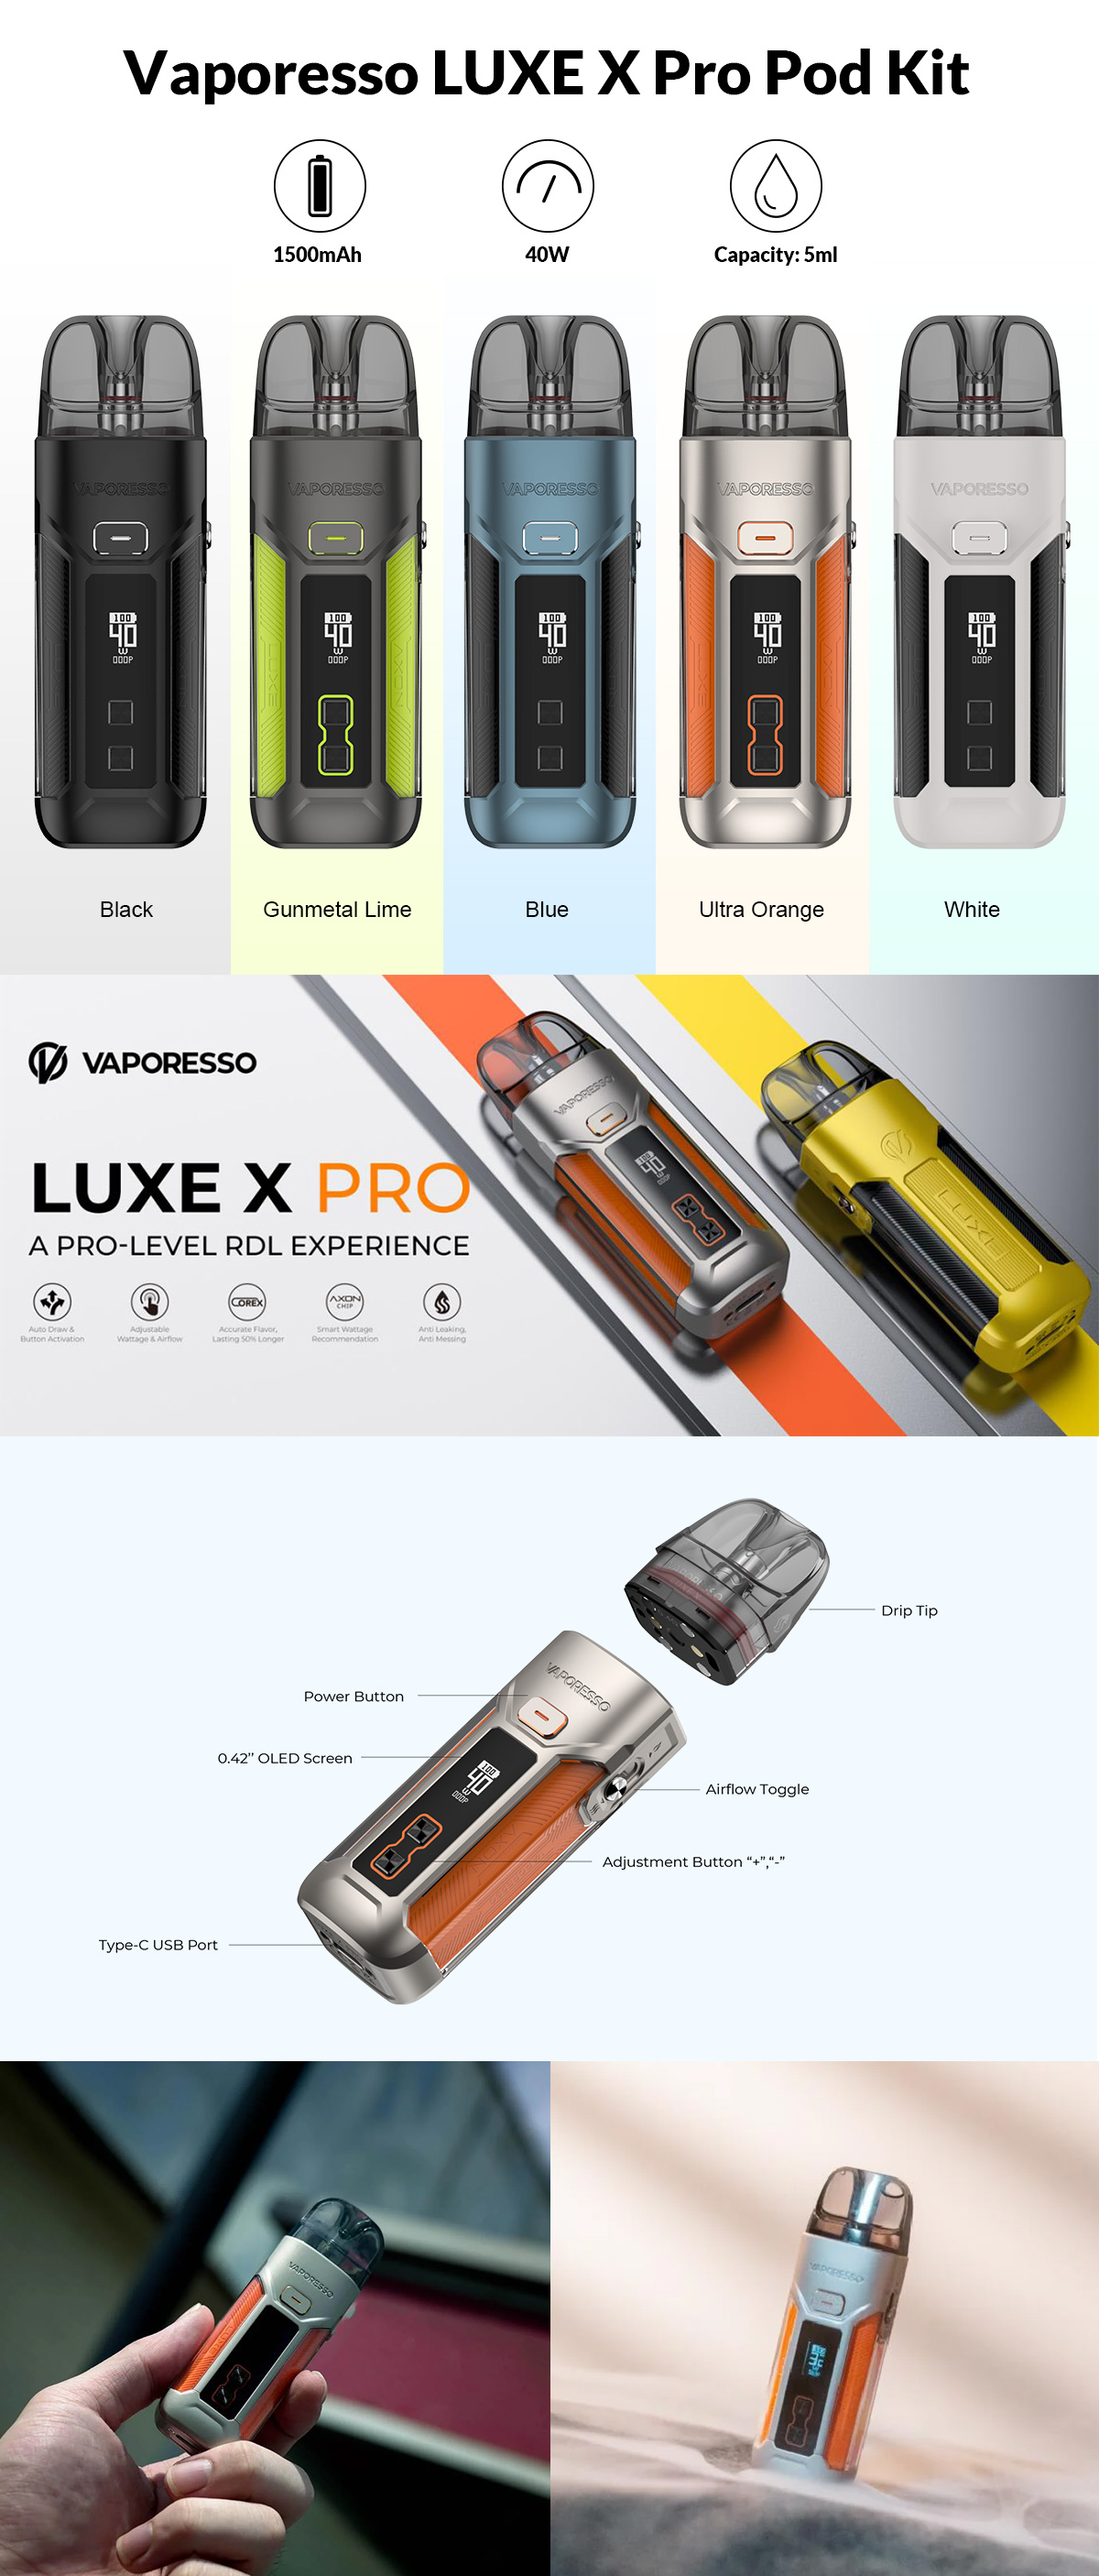 Vaporesso LUXE X Pro hot sale